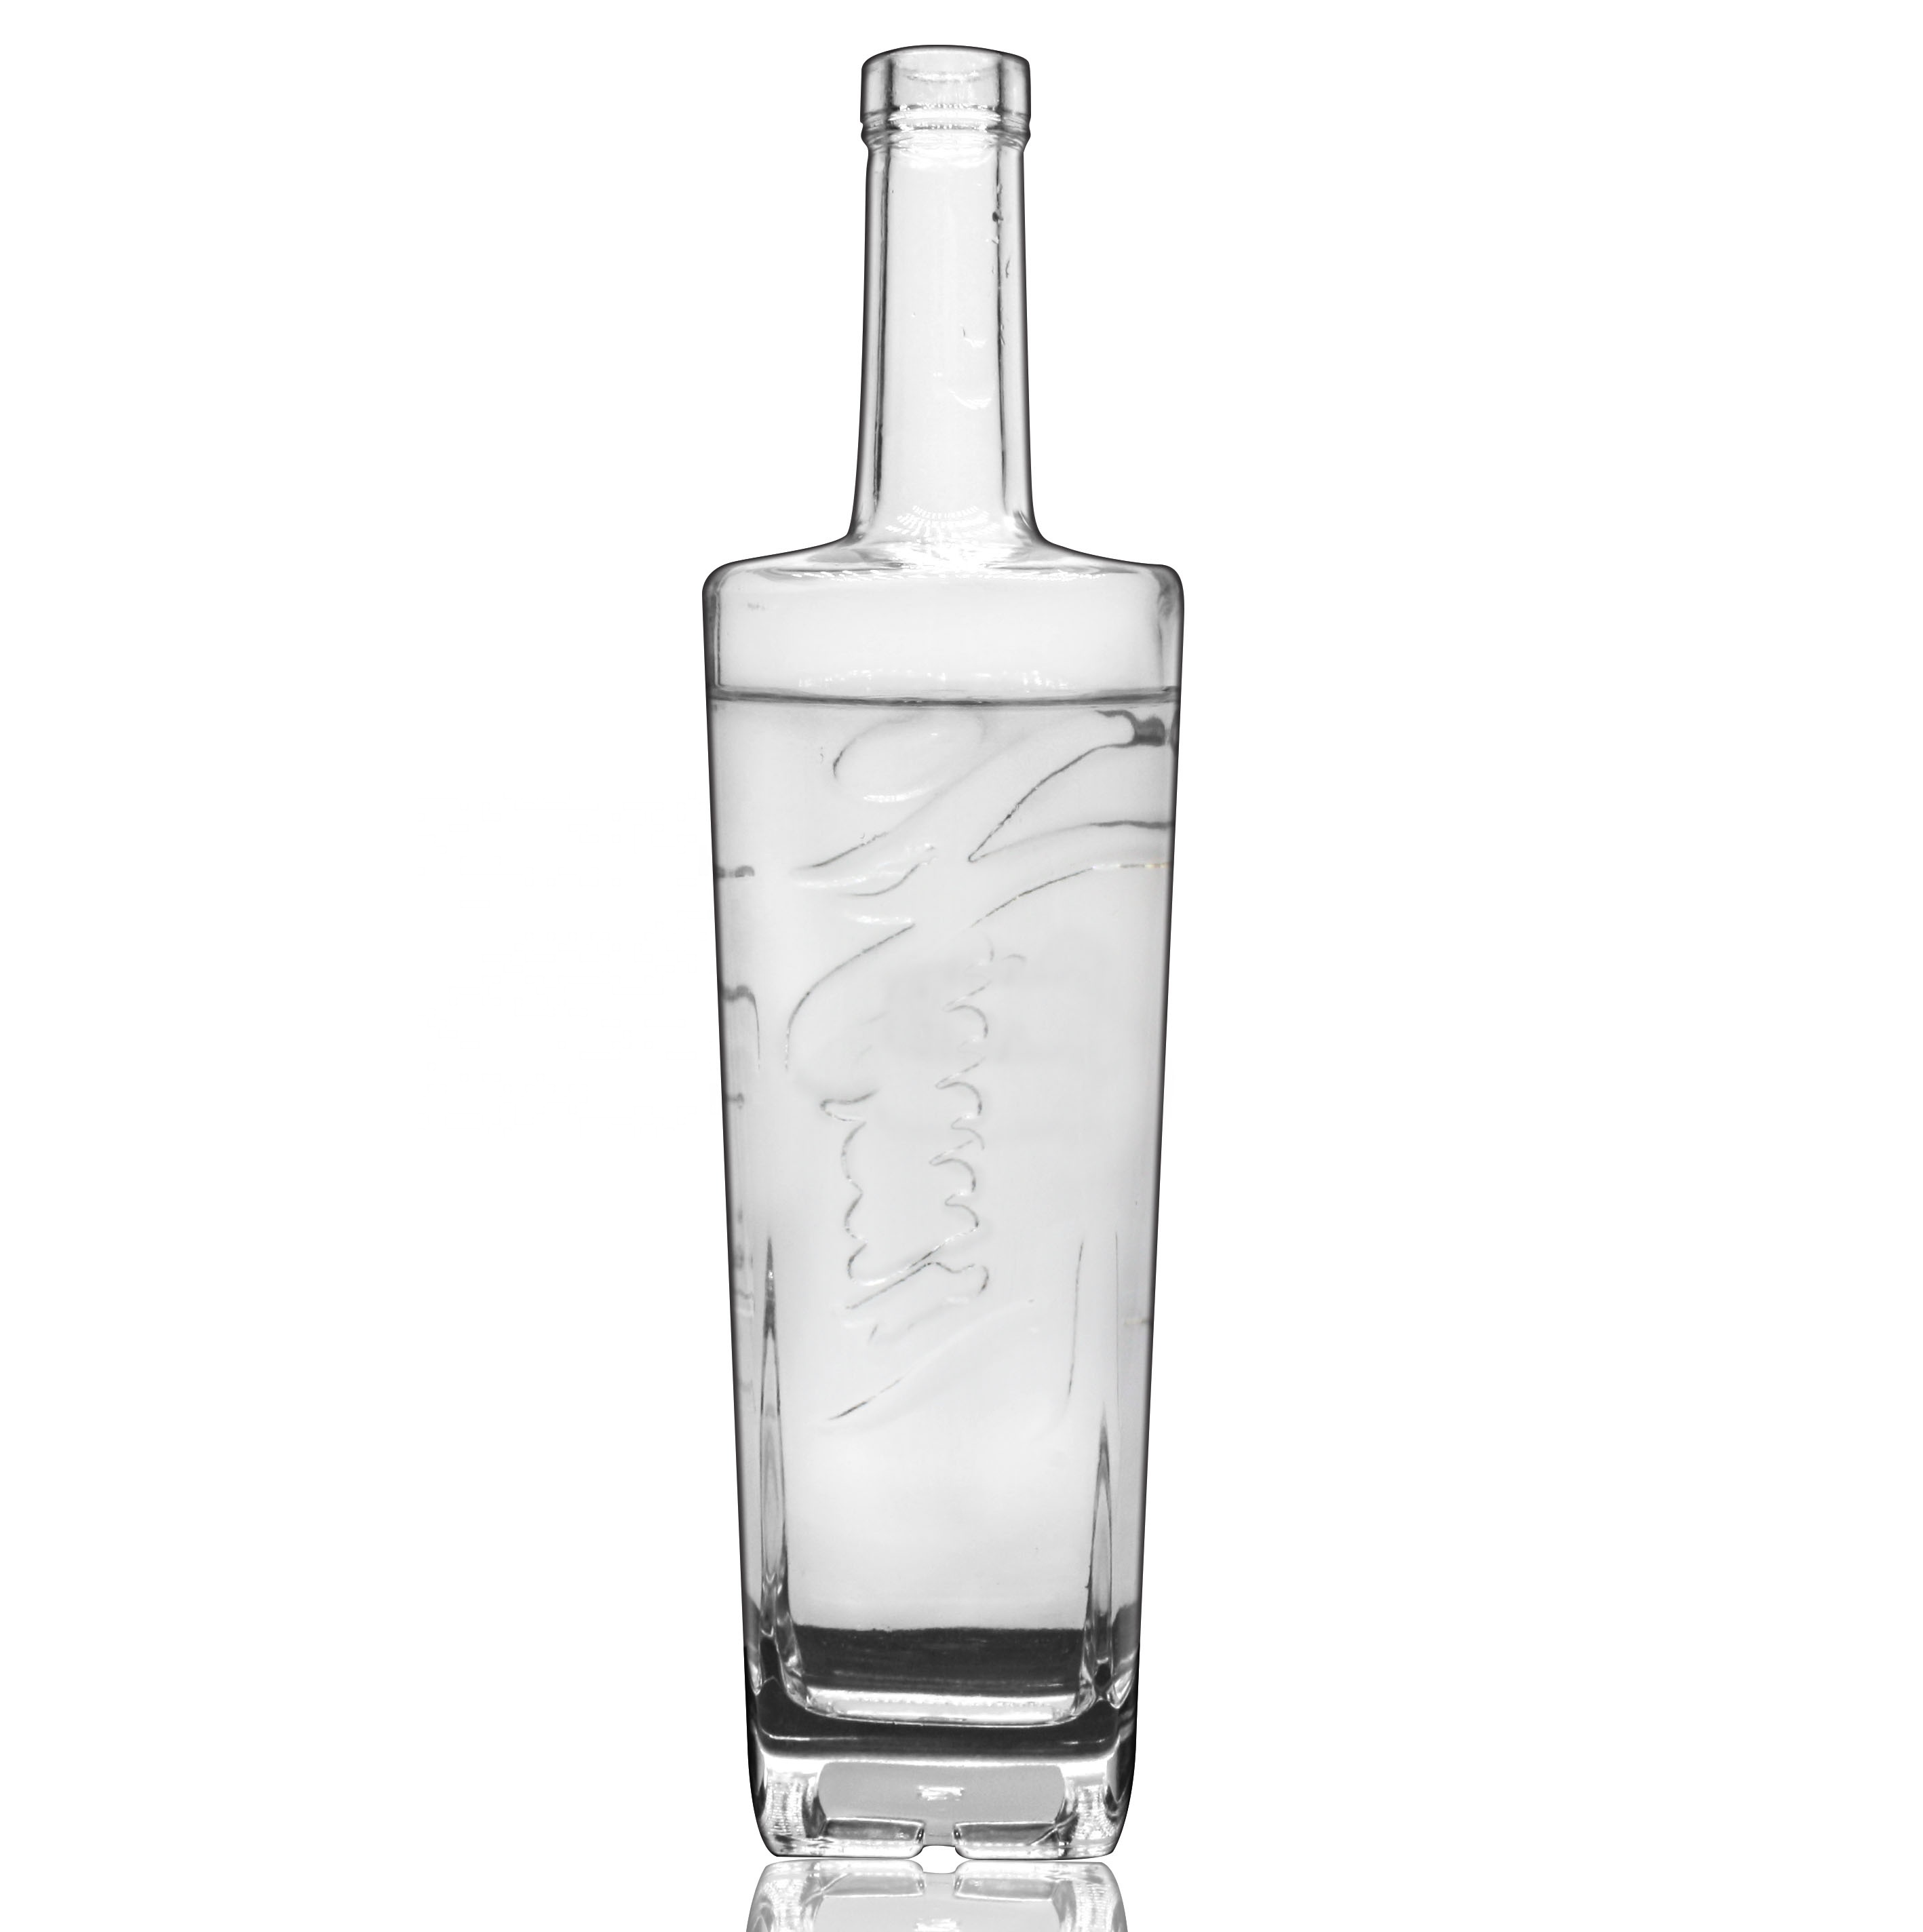 Wholesale 750ml Square Glass Liquor Spirit Bottles For